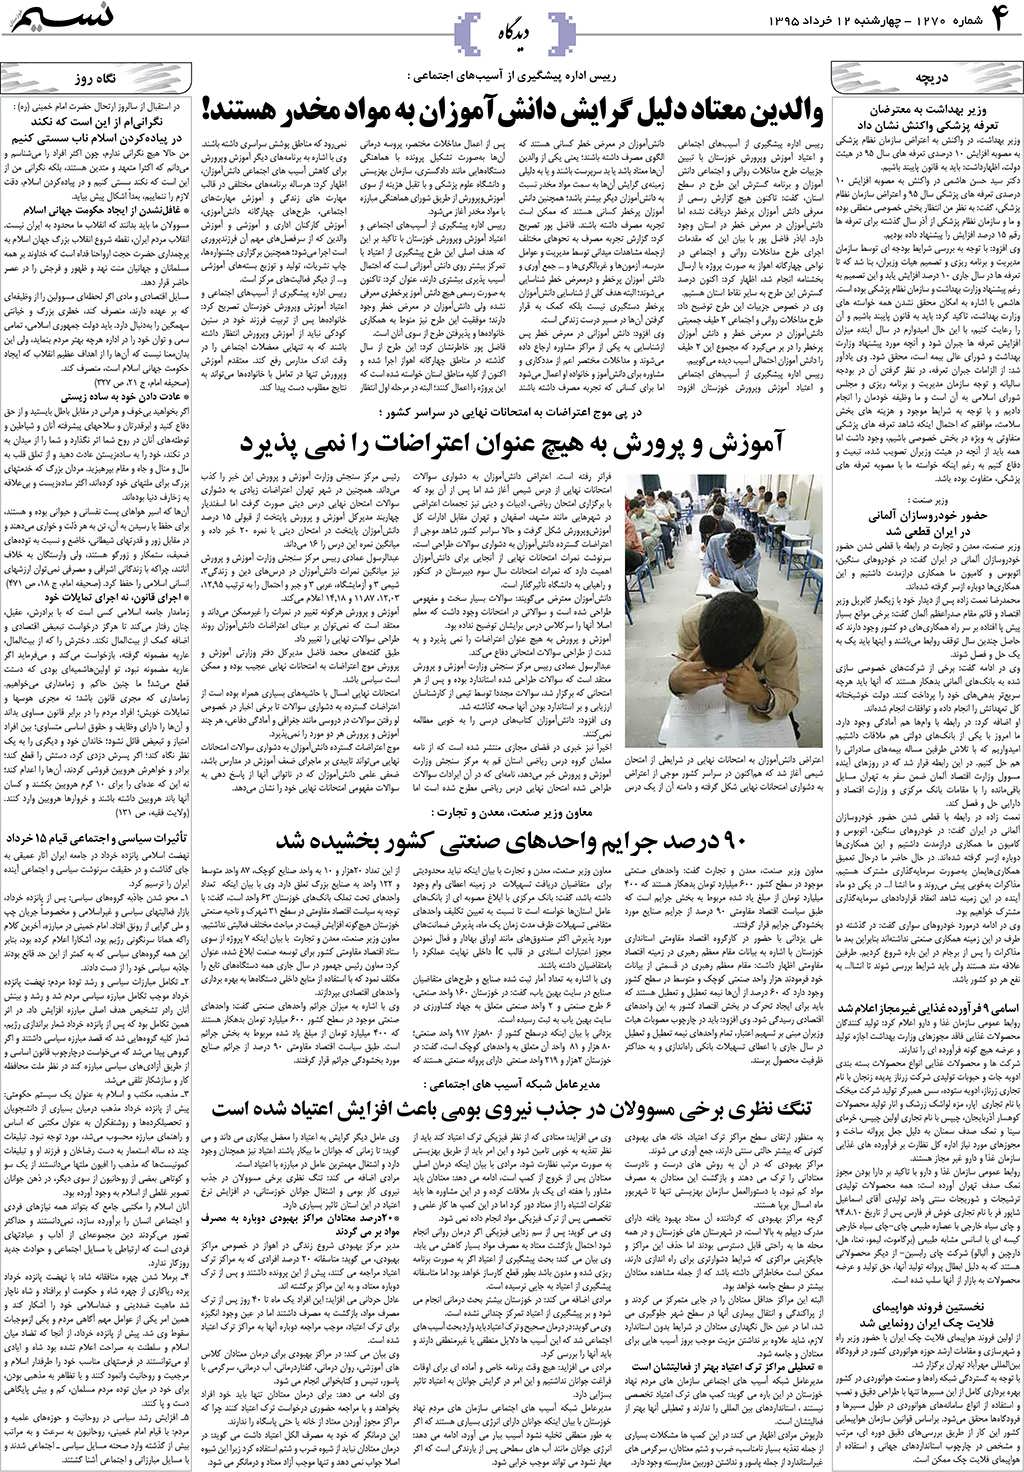 صفحه دیدگاه روزنامه نسیم شماره 1270